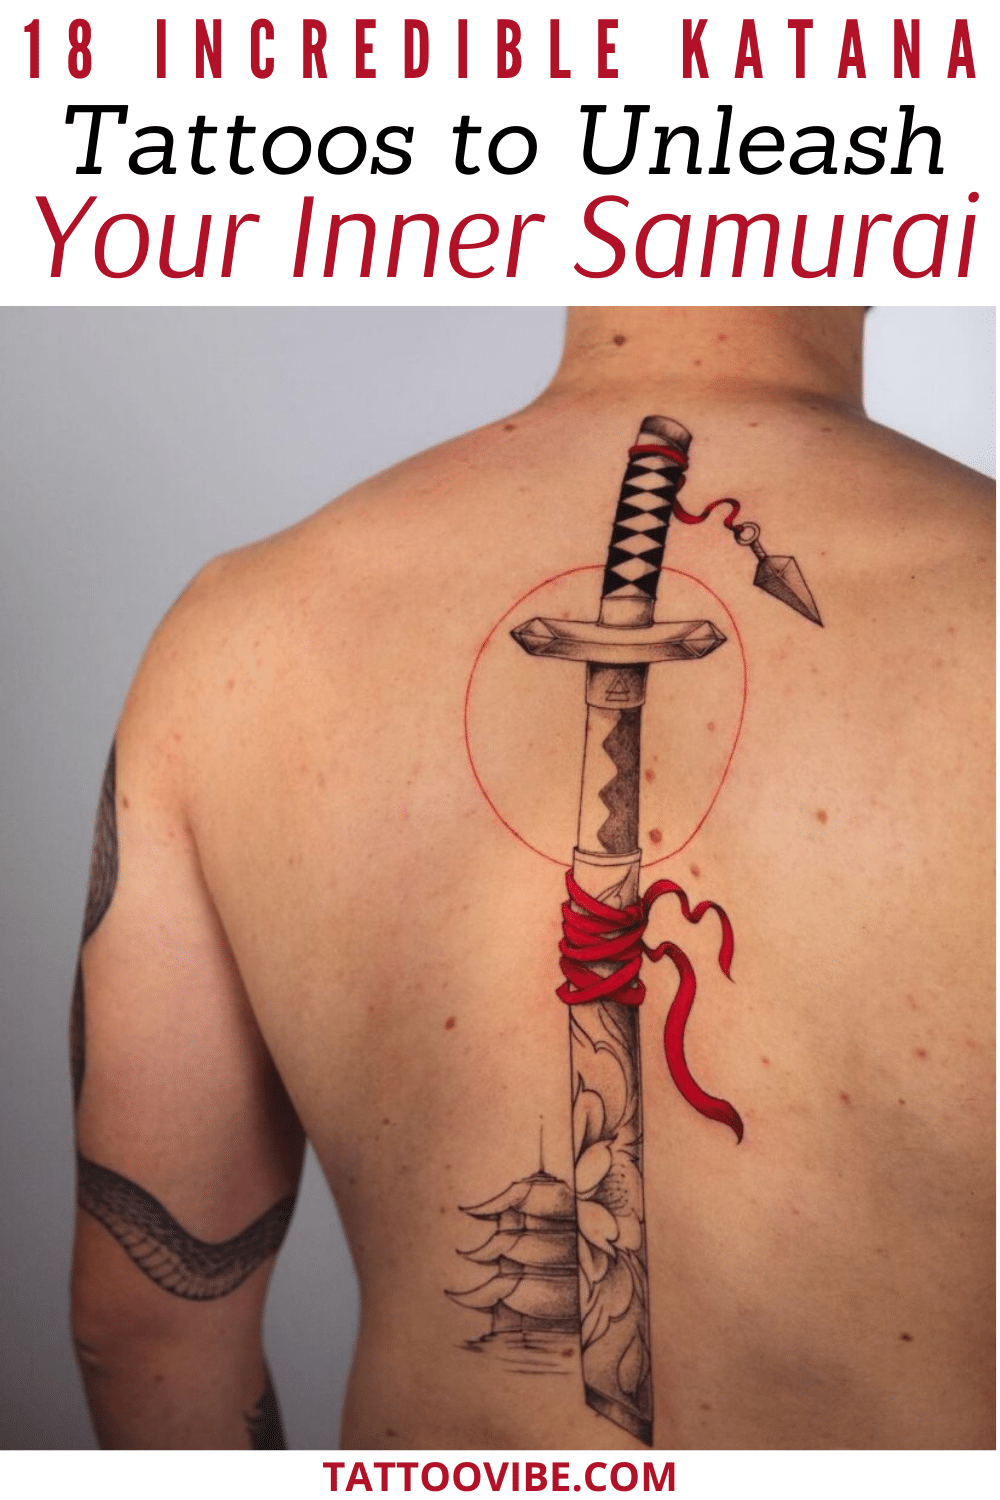 18 increíbles tatuajes de katanas para dar rienda suelta a tu samurái interior